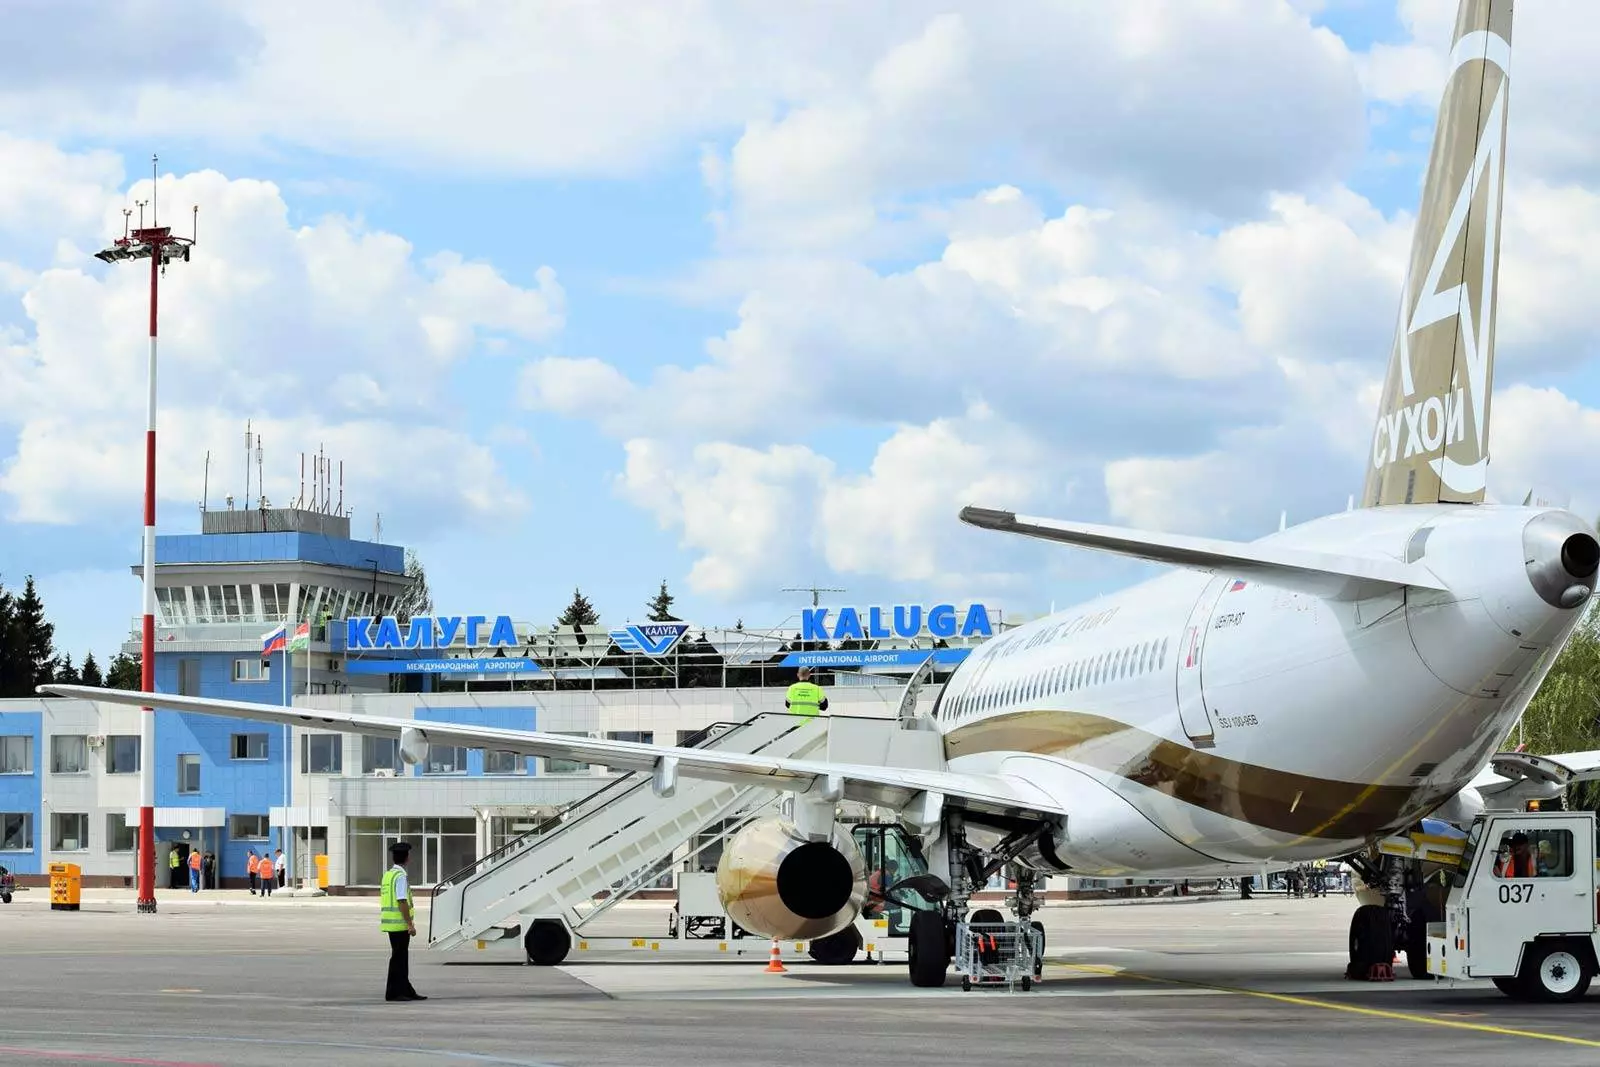 Международный аэропорт калуга (грабцево): официальный сайт, расписание рейсов